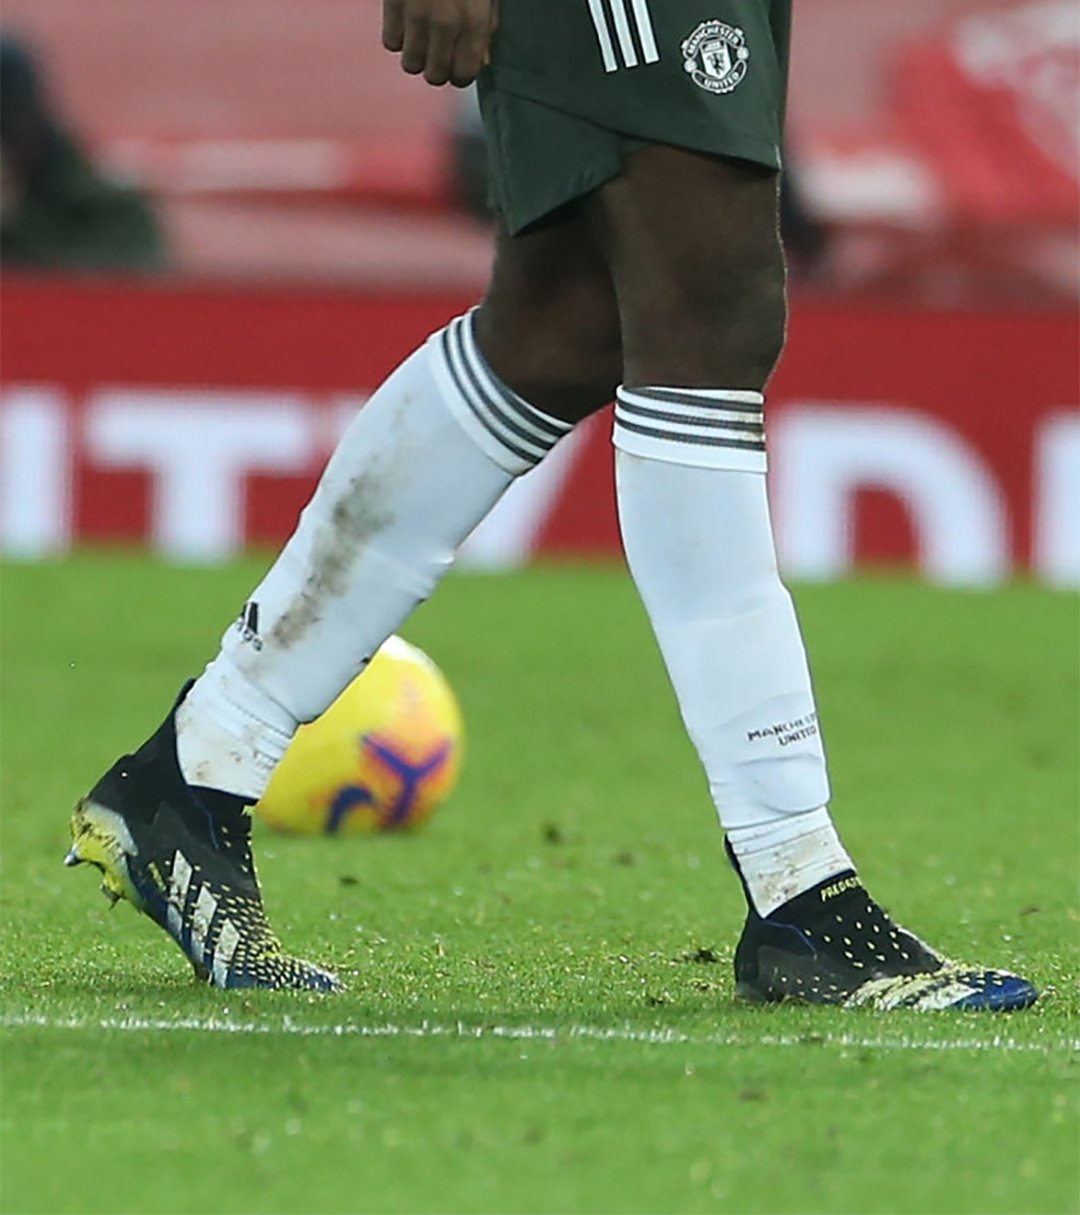 Marca de Gol on Twitter: "⚫️⚽️ Paul Pogba (@paulpogba) estrenando los nuevos botines adidas Predator Freak el encuentro entre Liverpool y United. Tendrán su lanzamiento al público a la brevedad.